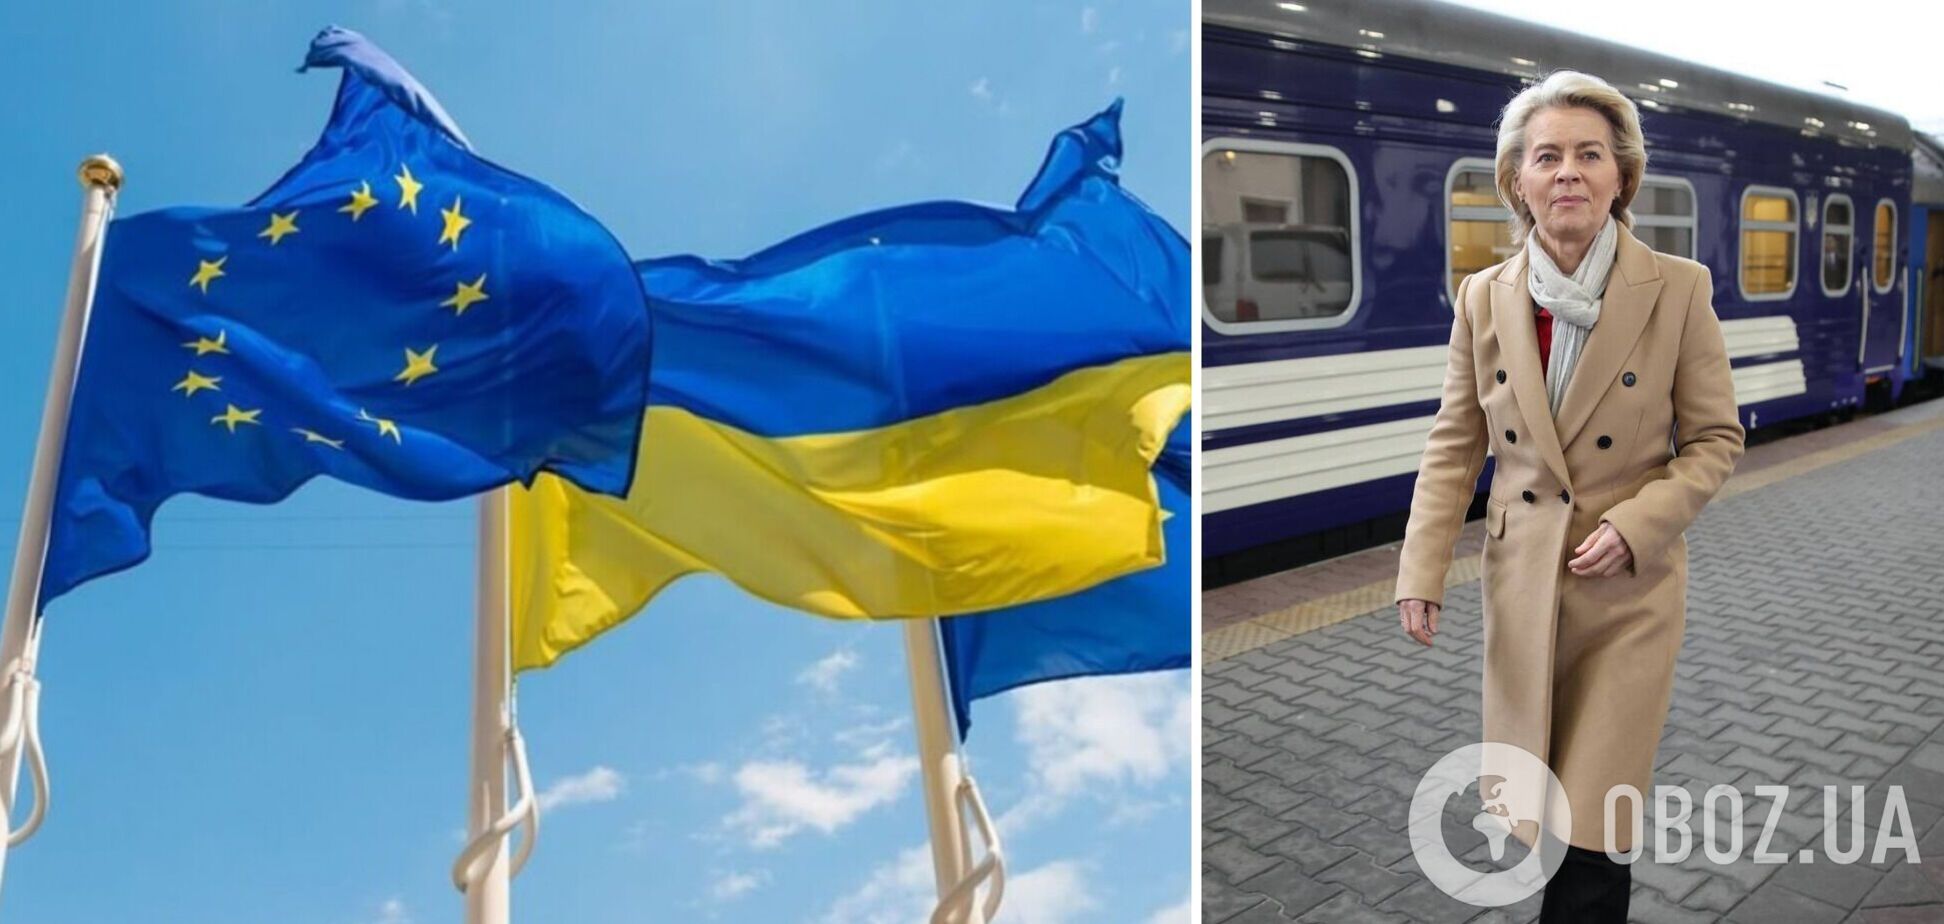 'Мы твердо стоим на стороне Украины': в Киев прибыла с визитом президент Еврокомиссии Урсула фон дер Ляйен. Фото